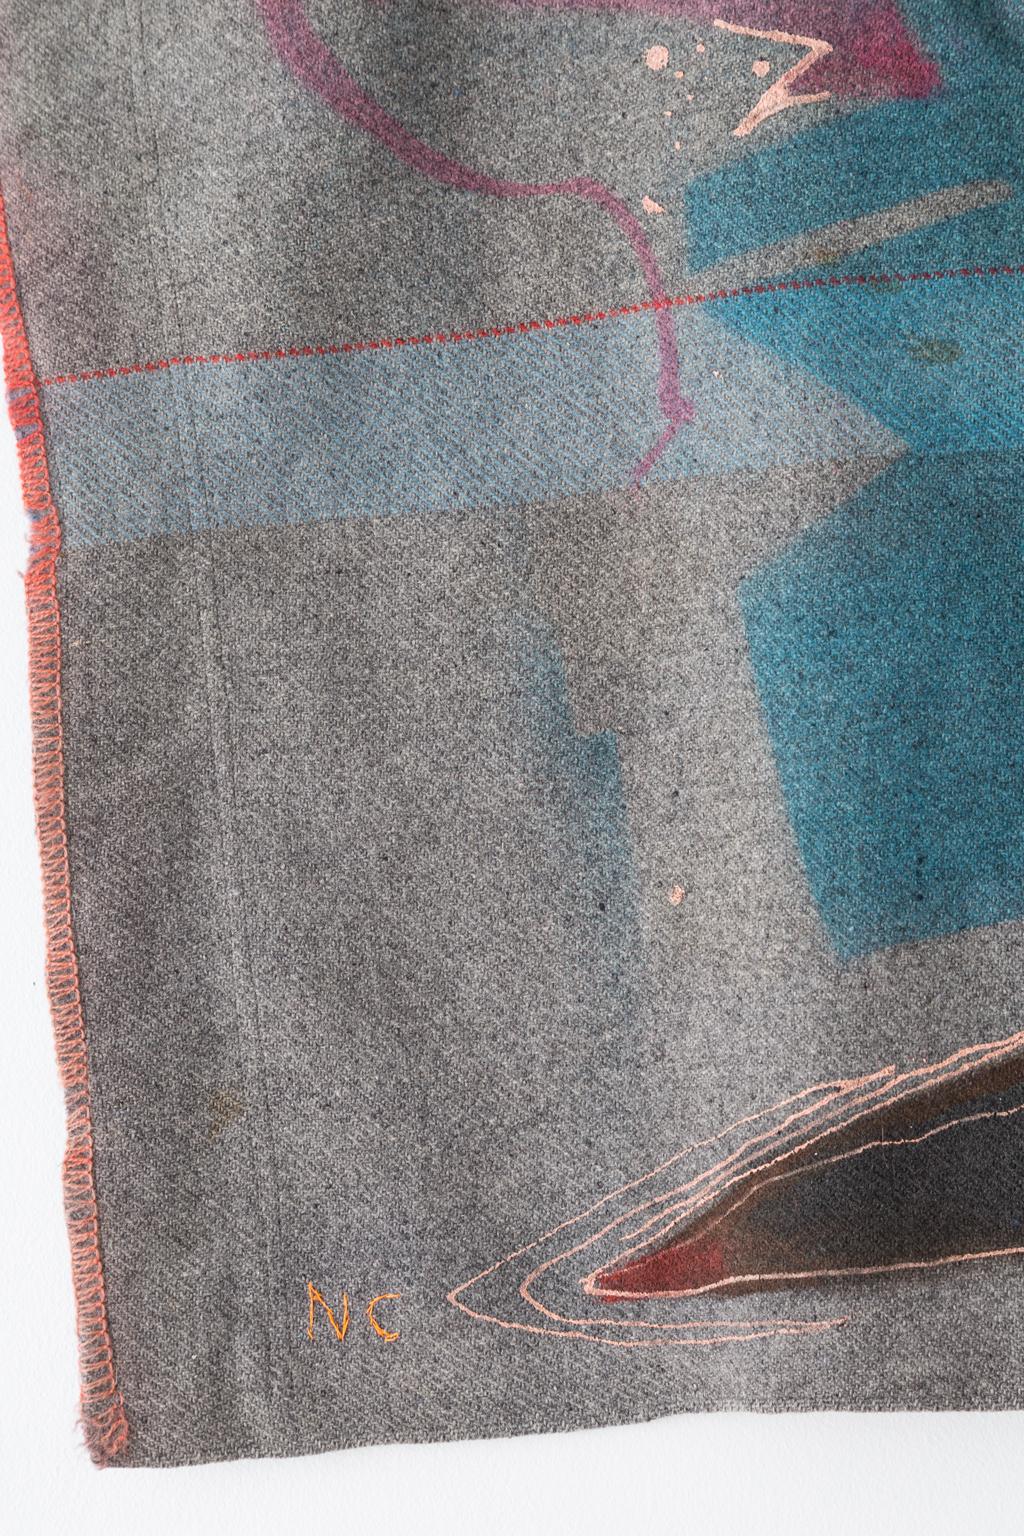 Peinture courtepointe « Flytape » - Art textile de tapisserie en laine, en stock en vente 2